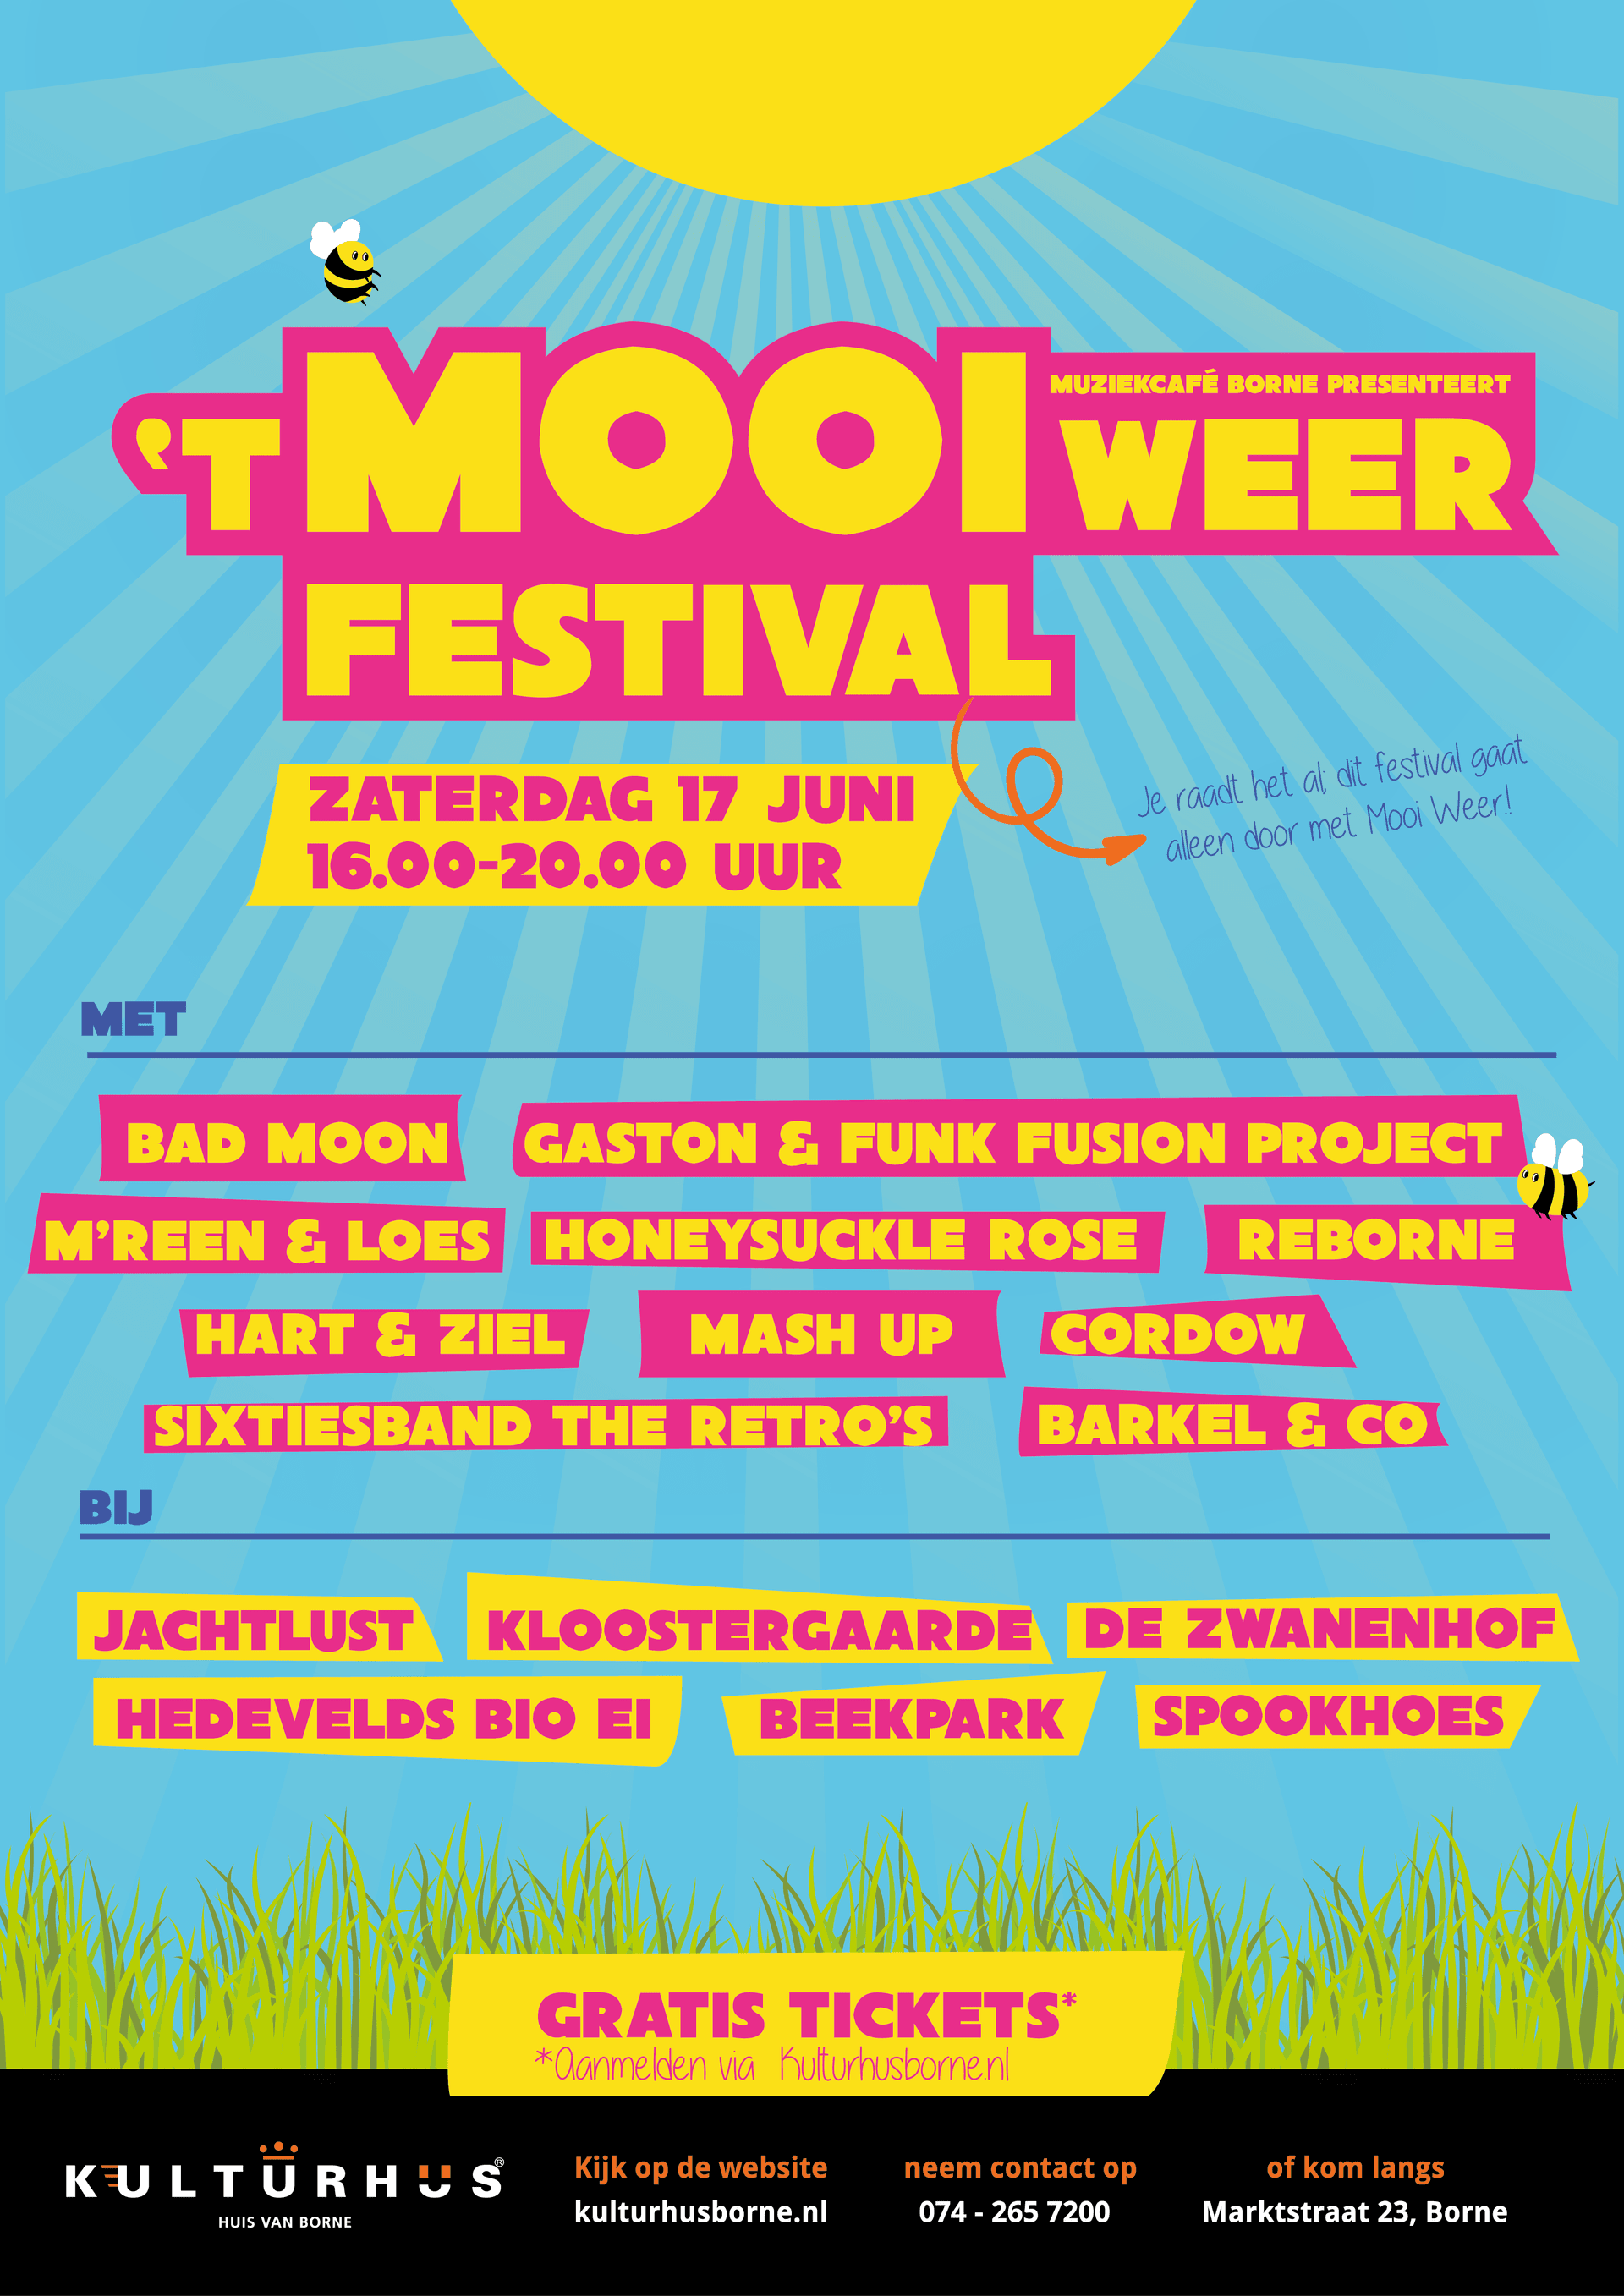 Poster mooi weer festival met artiesten en locaties gratis tickets via kulturhus.nl